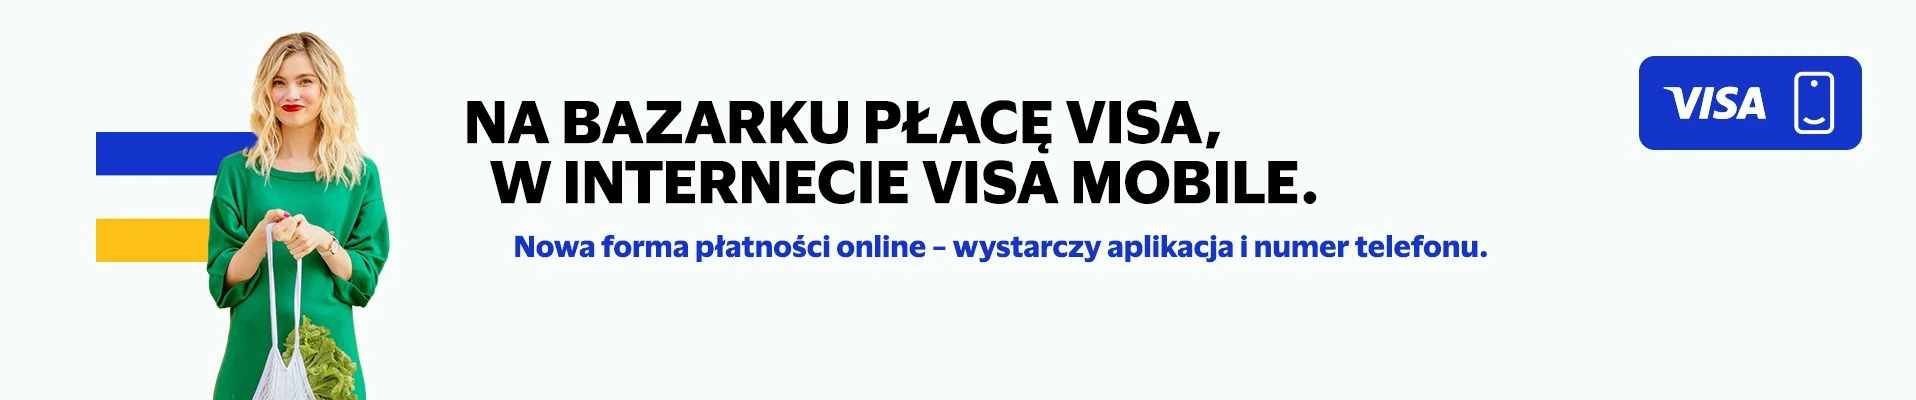 visa mobile bps banner 1920x400 v2 e1674063